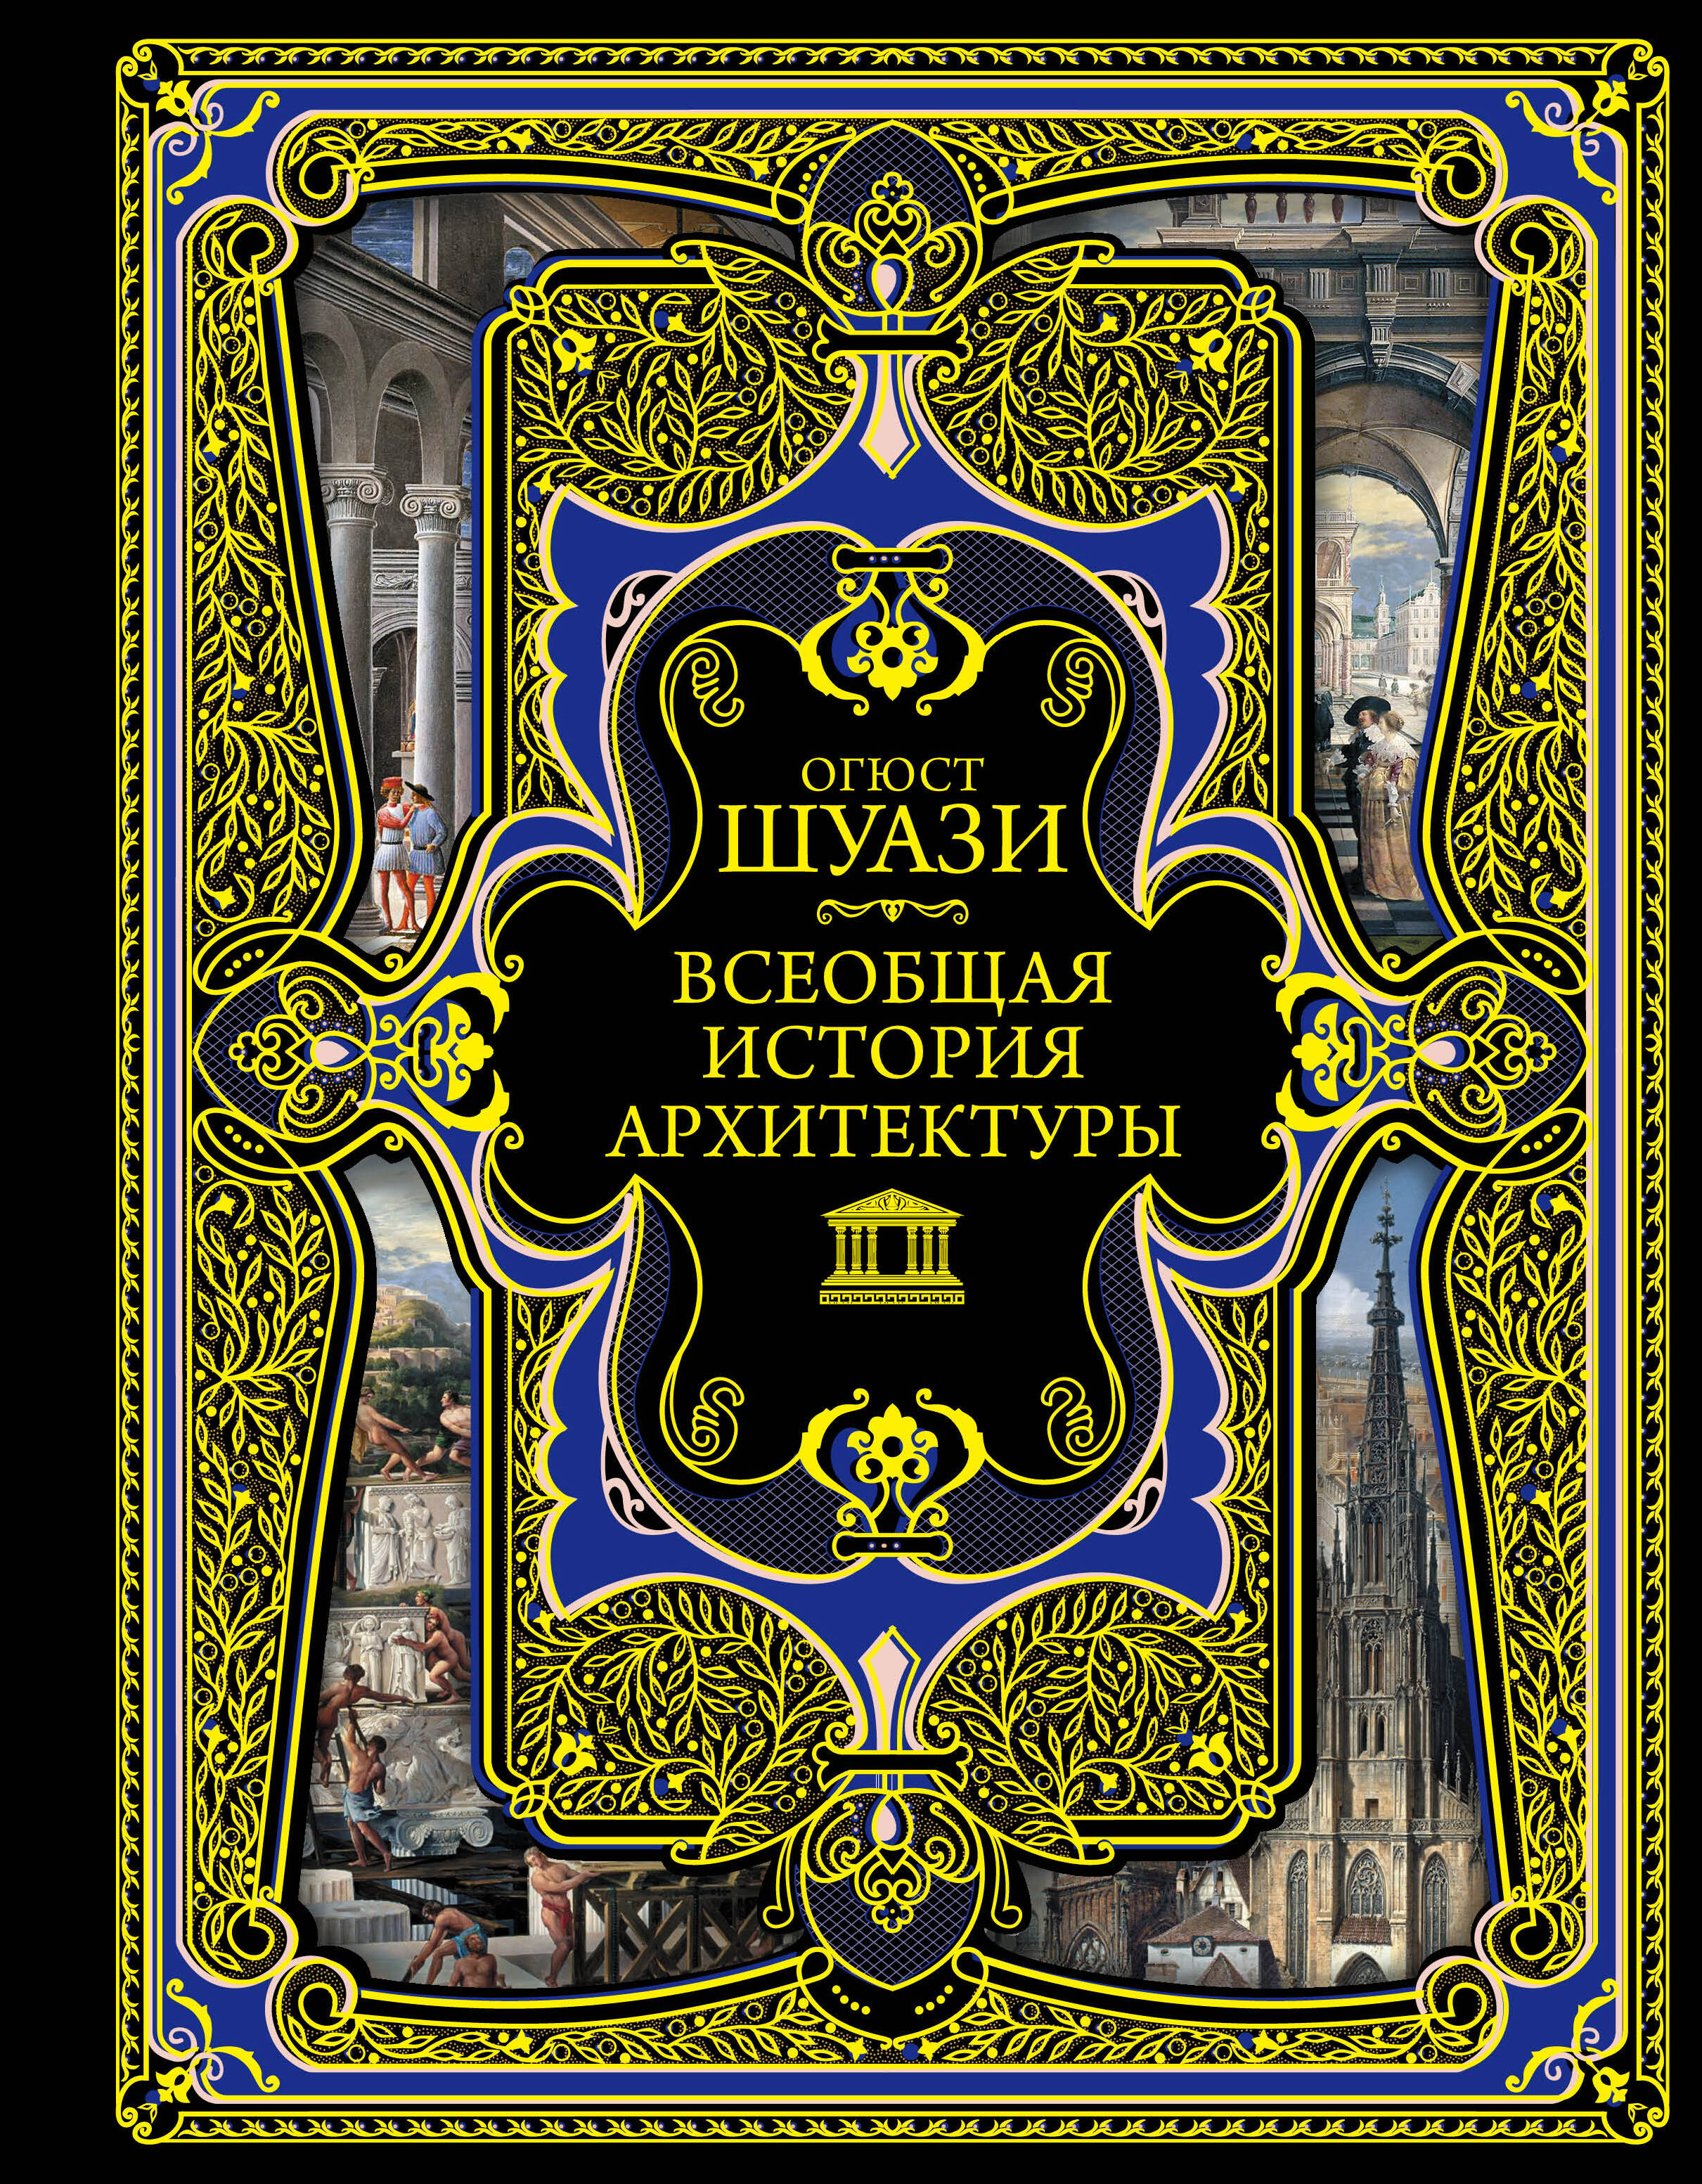 Шуази Огюст Всеобщая история архитектуры. 3-е издание,исправленное и дополненное